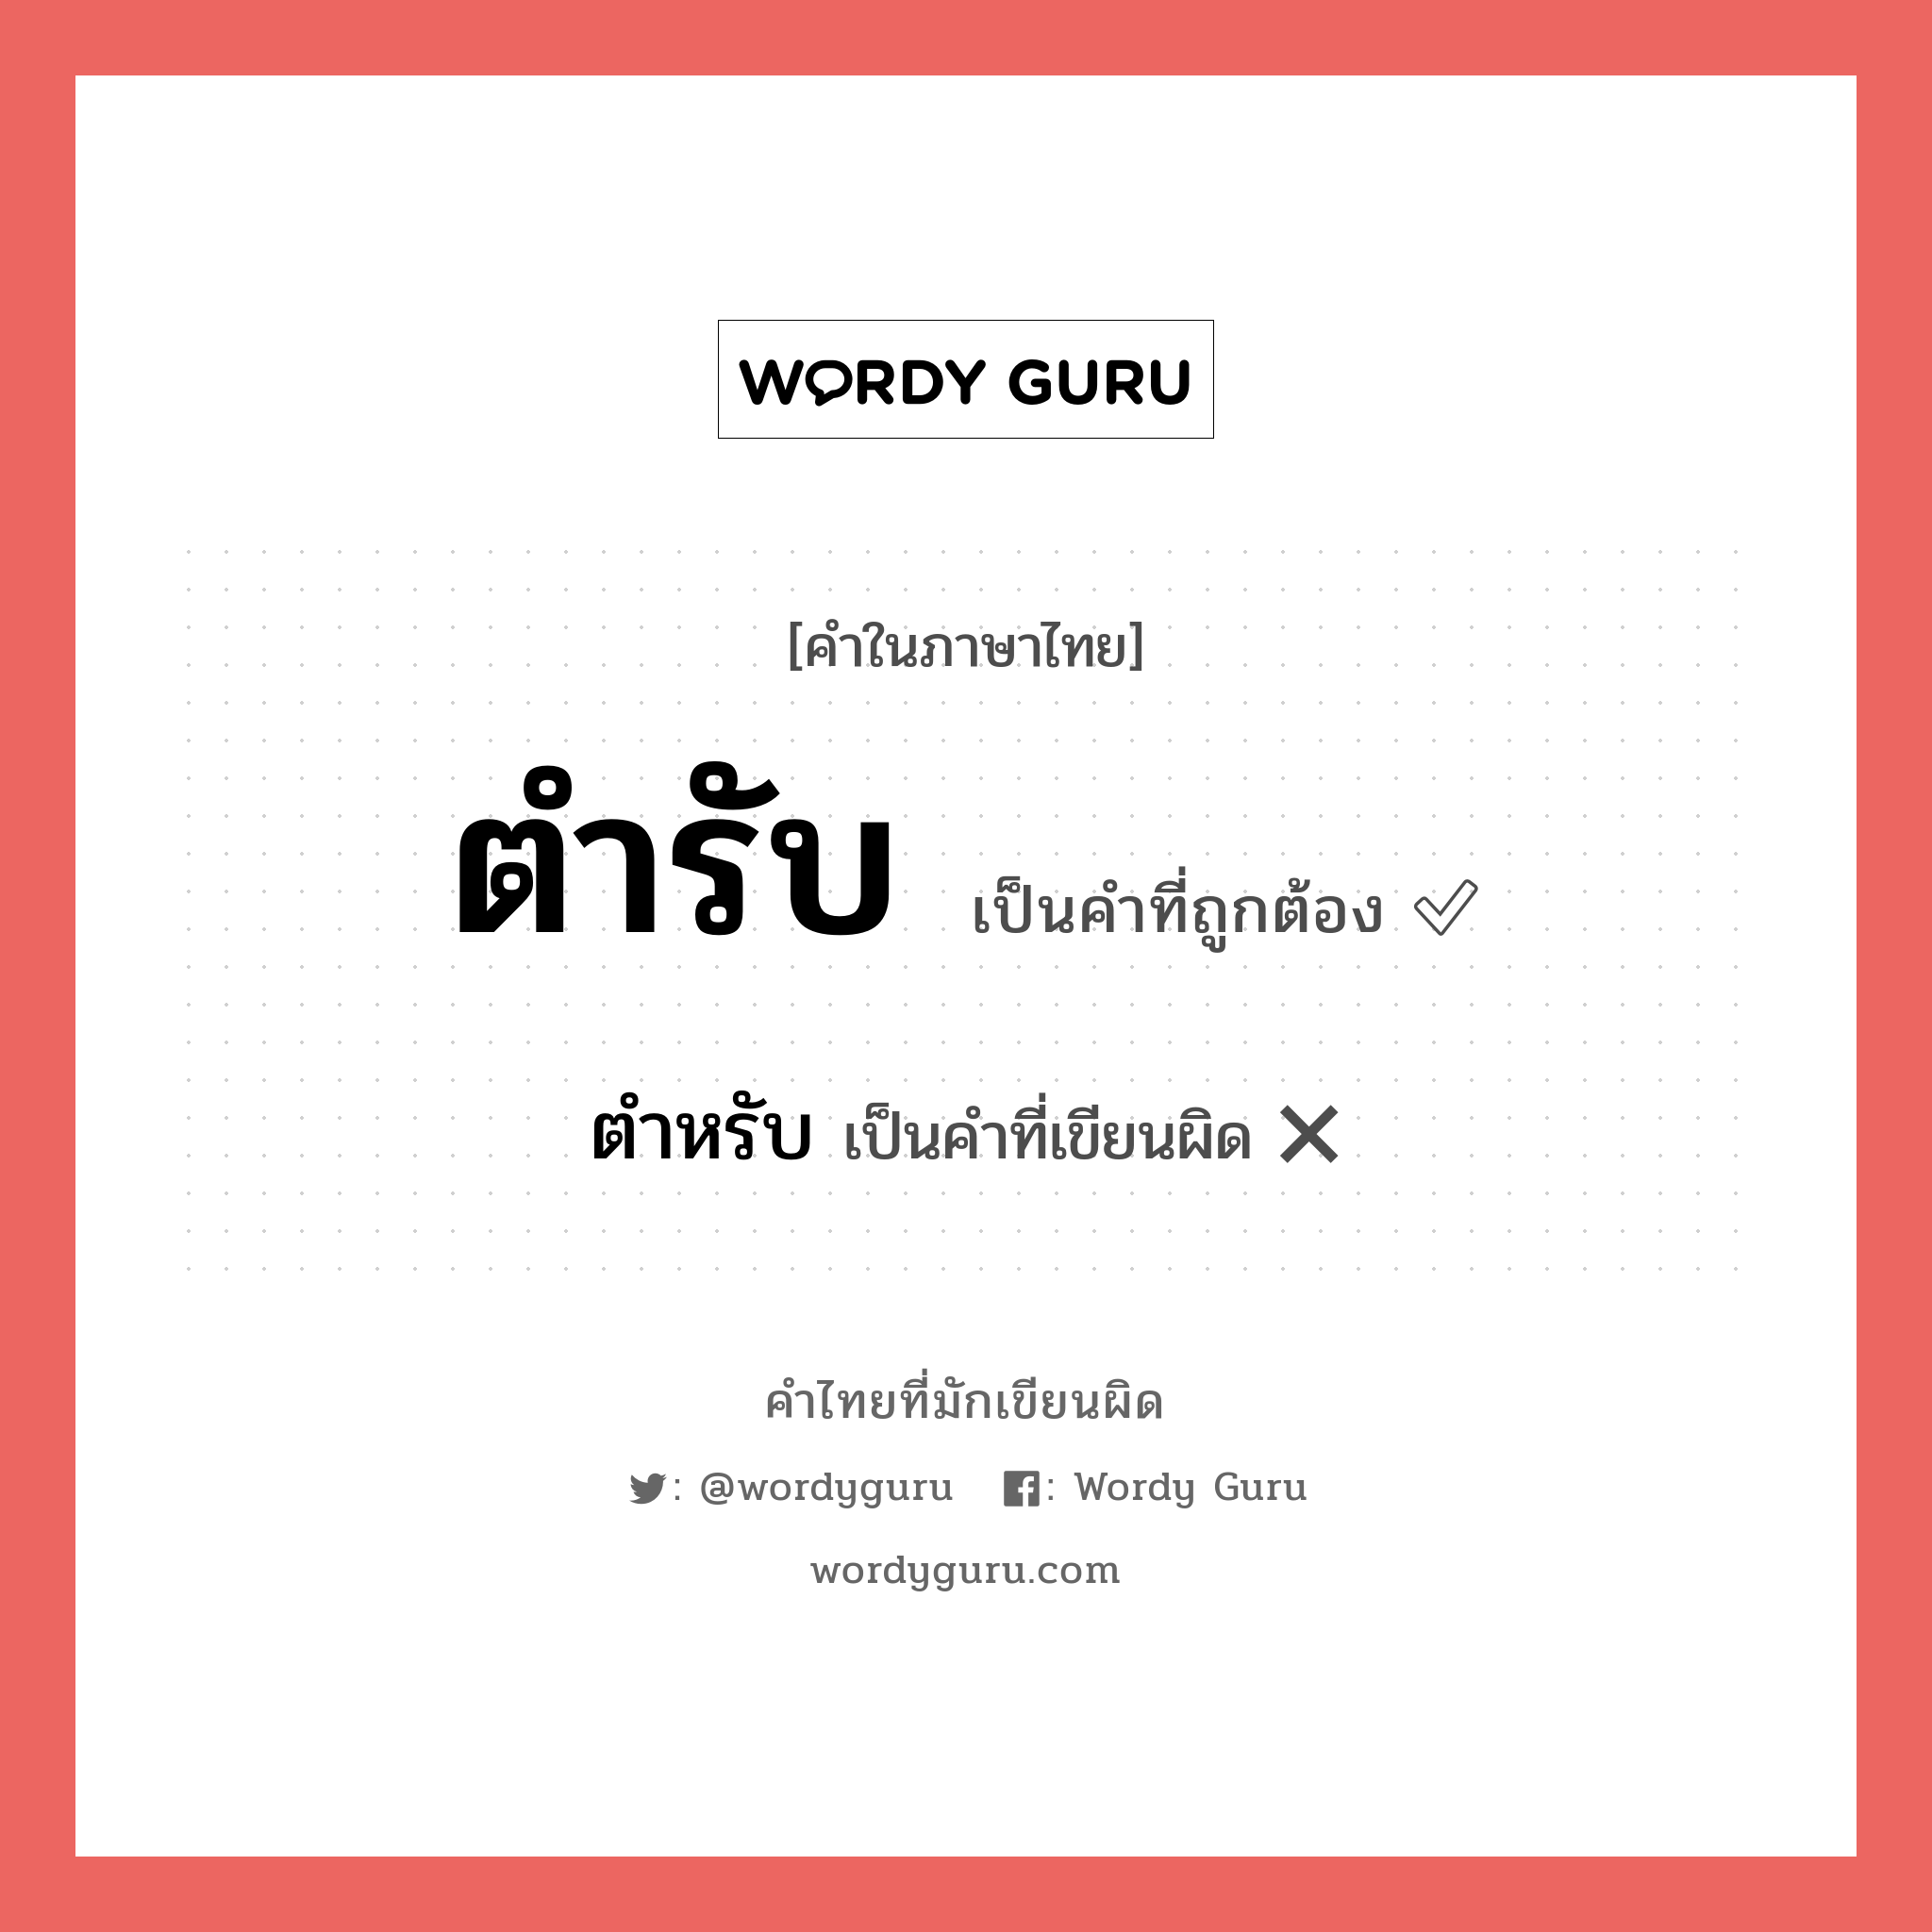 ตำหรับ หรือ ตำรับ คำไหนเขียนถูก?, คำในภาษาไทยที่มักเขียนผิด ตำหรับ คำที่ผิด ❌ ตำรับ